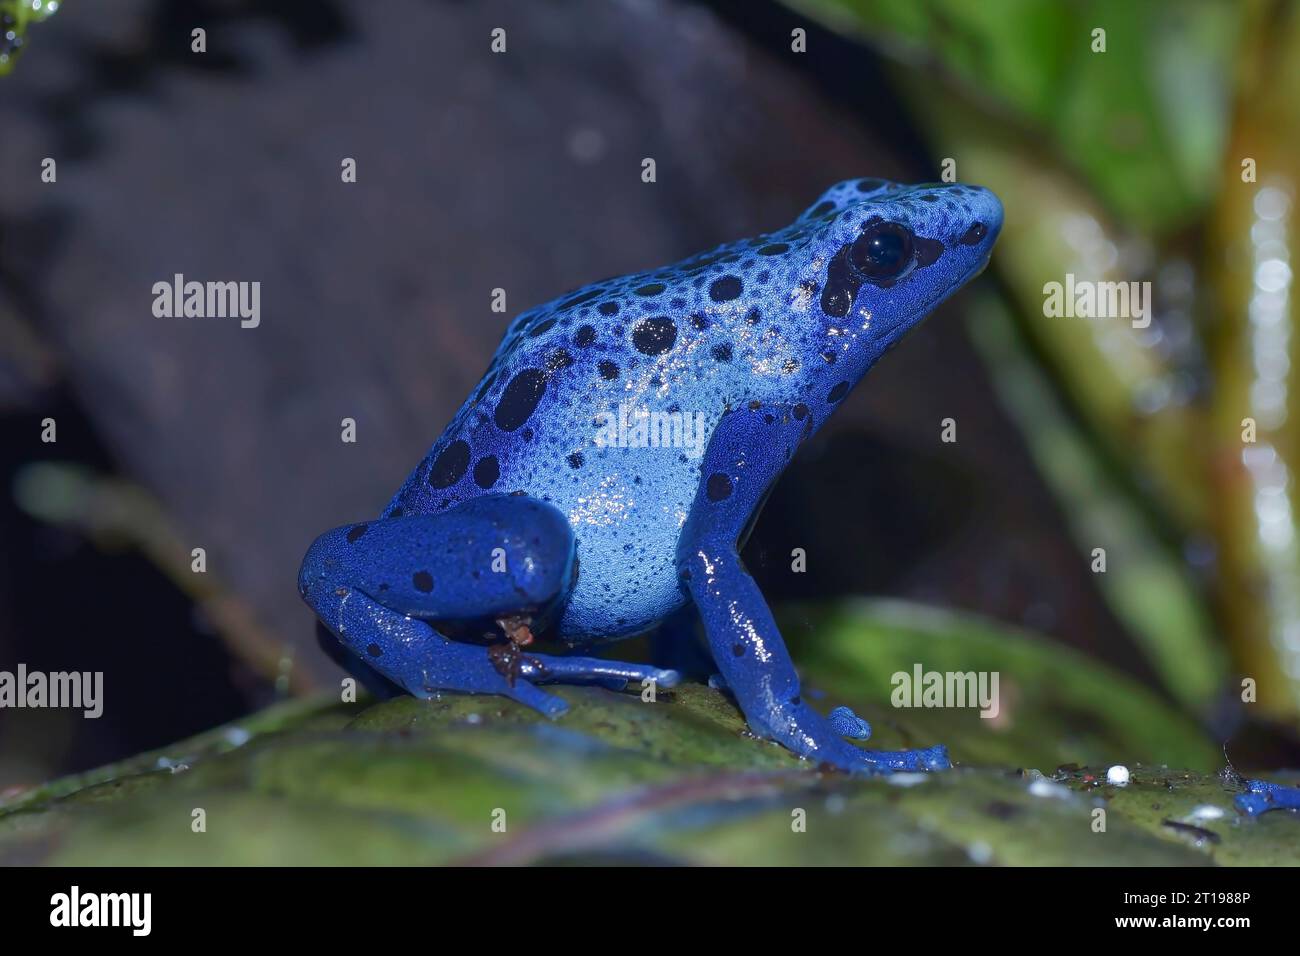 Gros plan d'une grenouille à fléchettes poison à pois bleus assise sur une feuille, Indonésie Banque D'Images